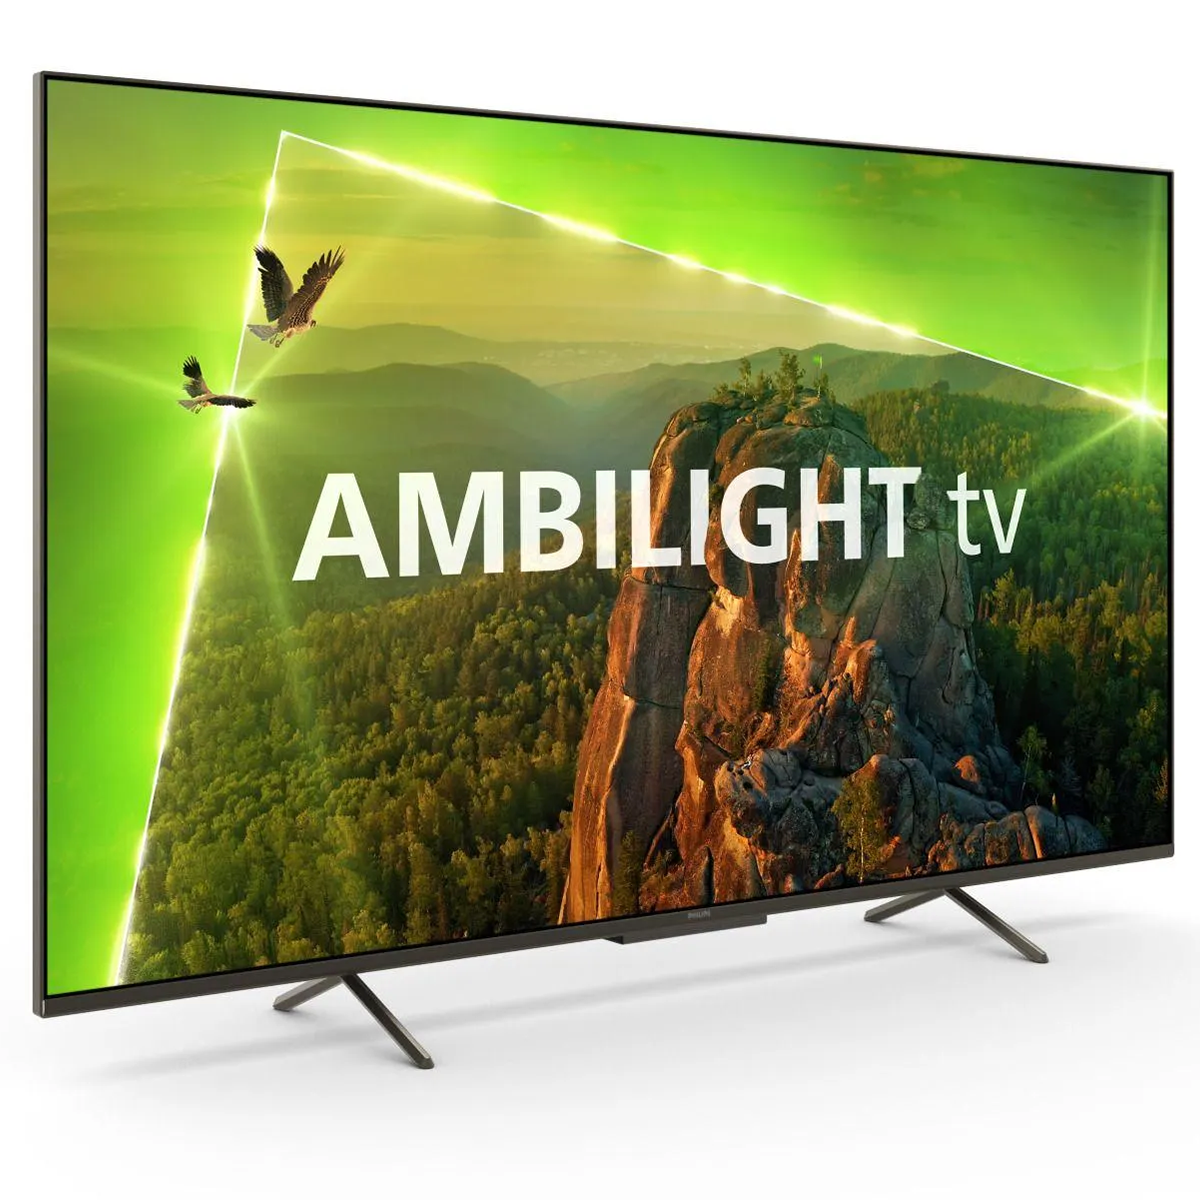 4K UHD LED TV 43PUS8118/12 AMBILIGHT slika proizvoda Front View 2 L